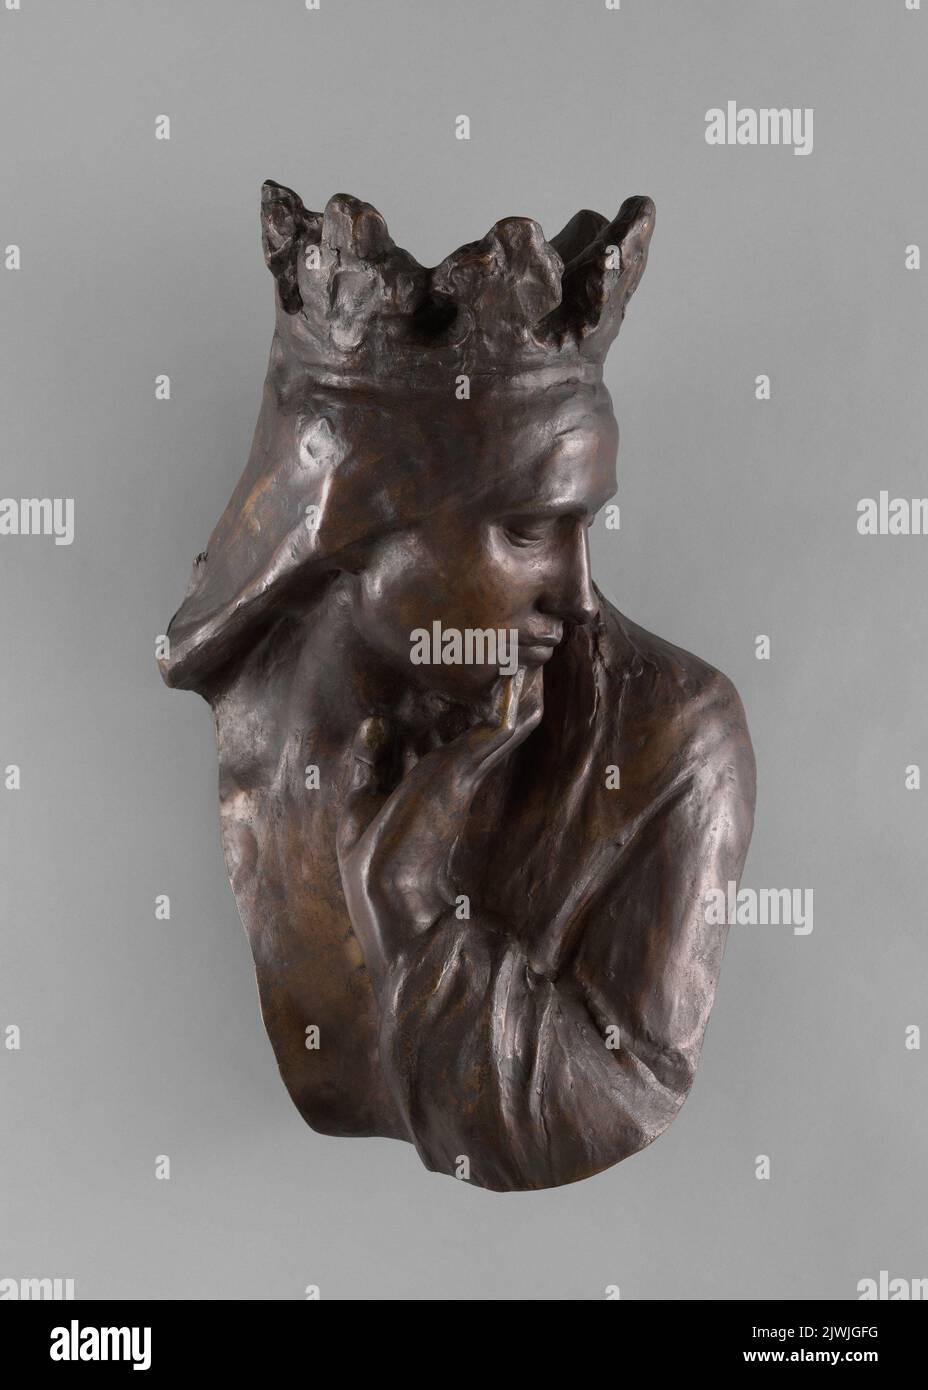 Królowa Jadwiga. Fragment Pochodu na Wawel. Szymanowski, Wacław (1859-1930), sculptor Stock Photo